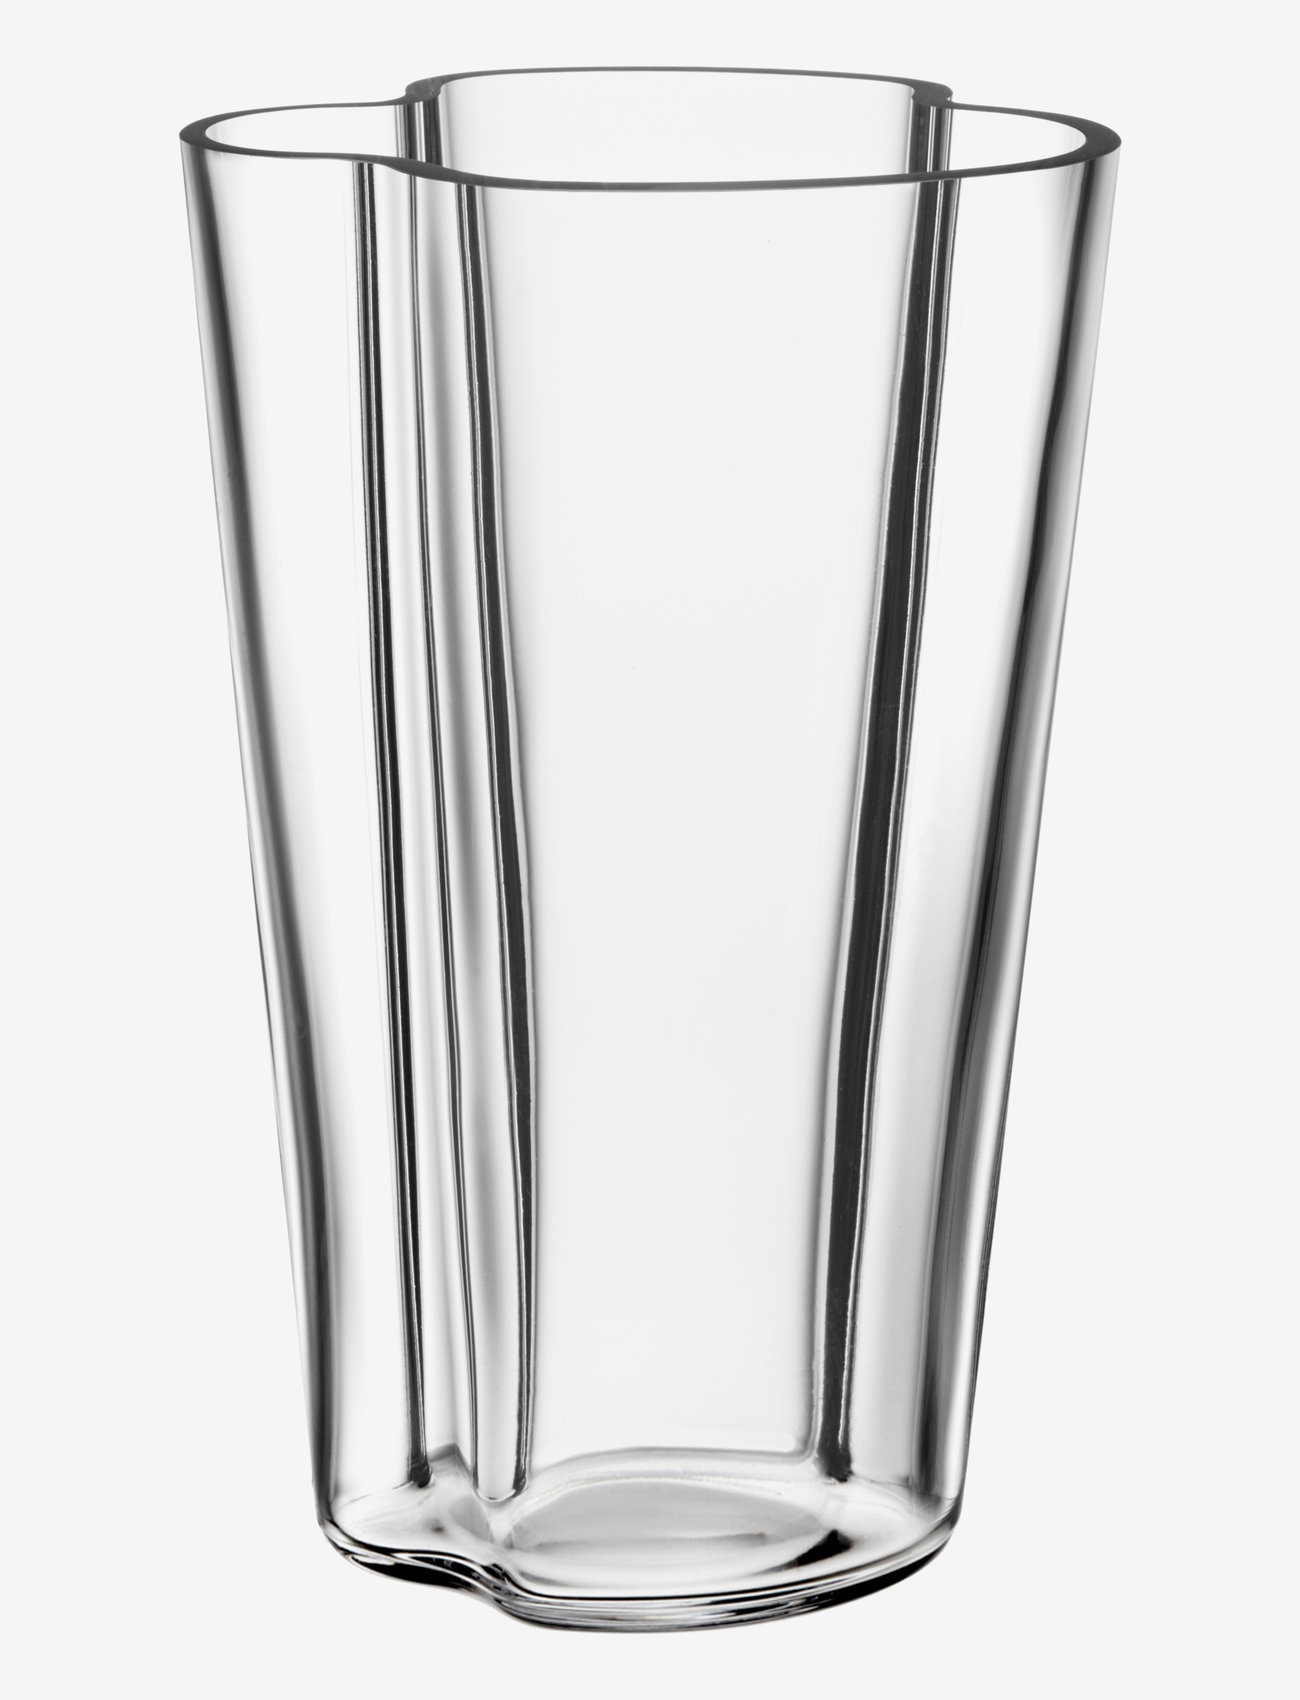 Iittala - Aalto vase - birthday gifts - clear - 0